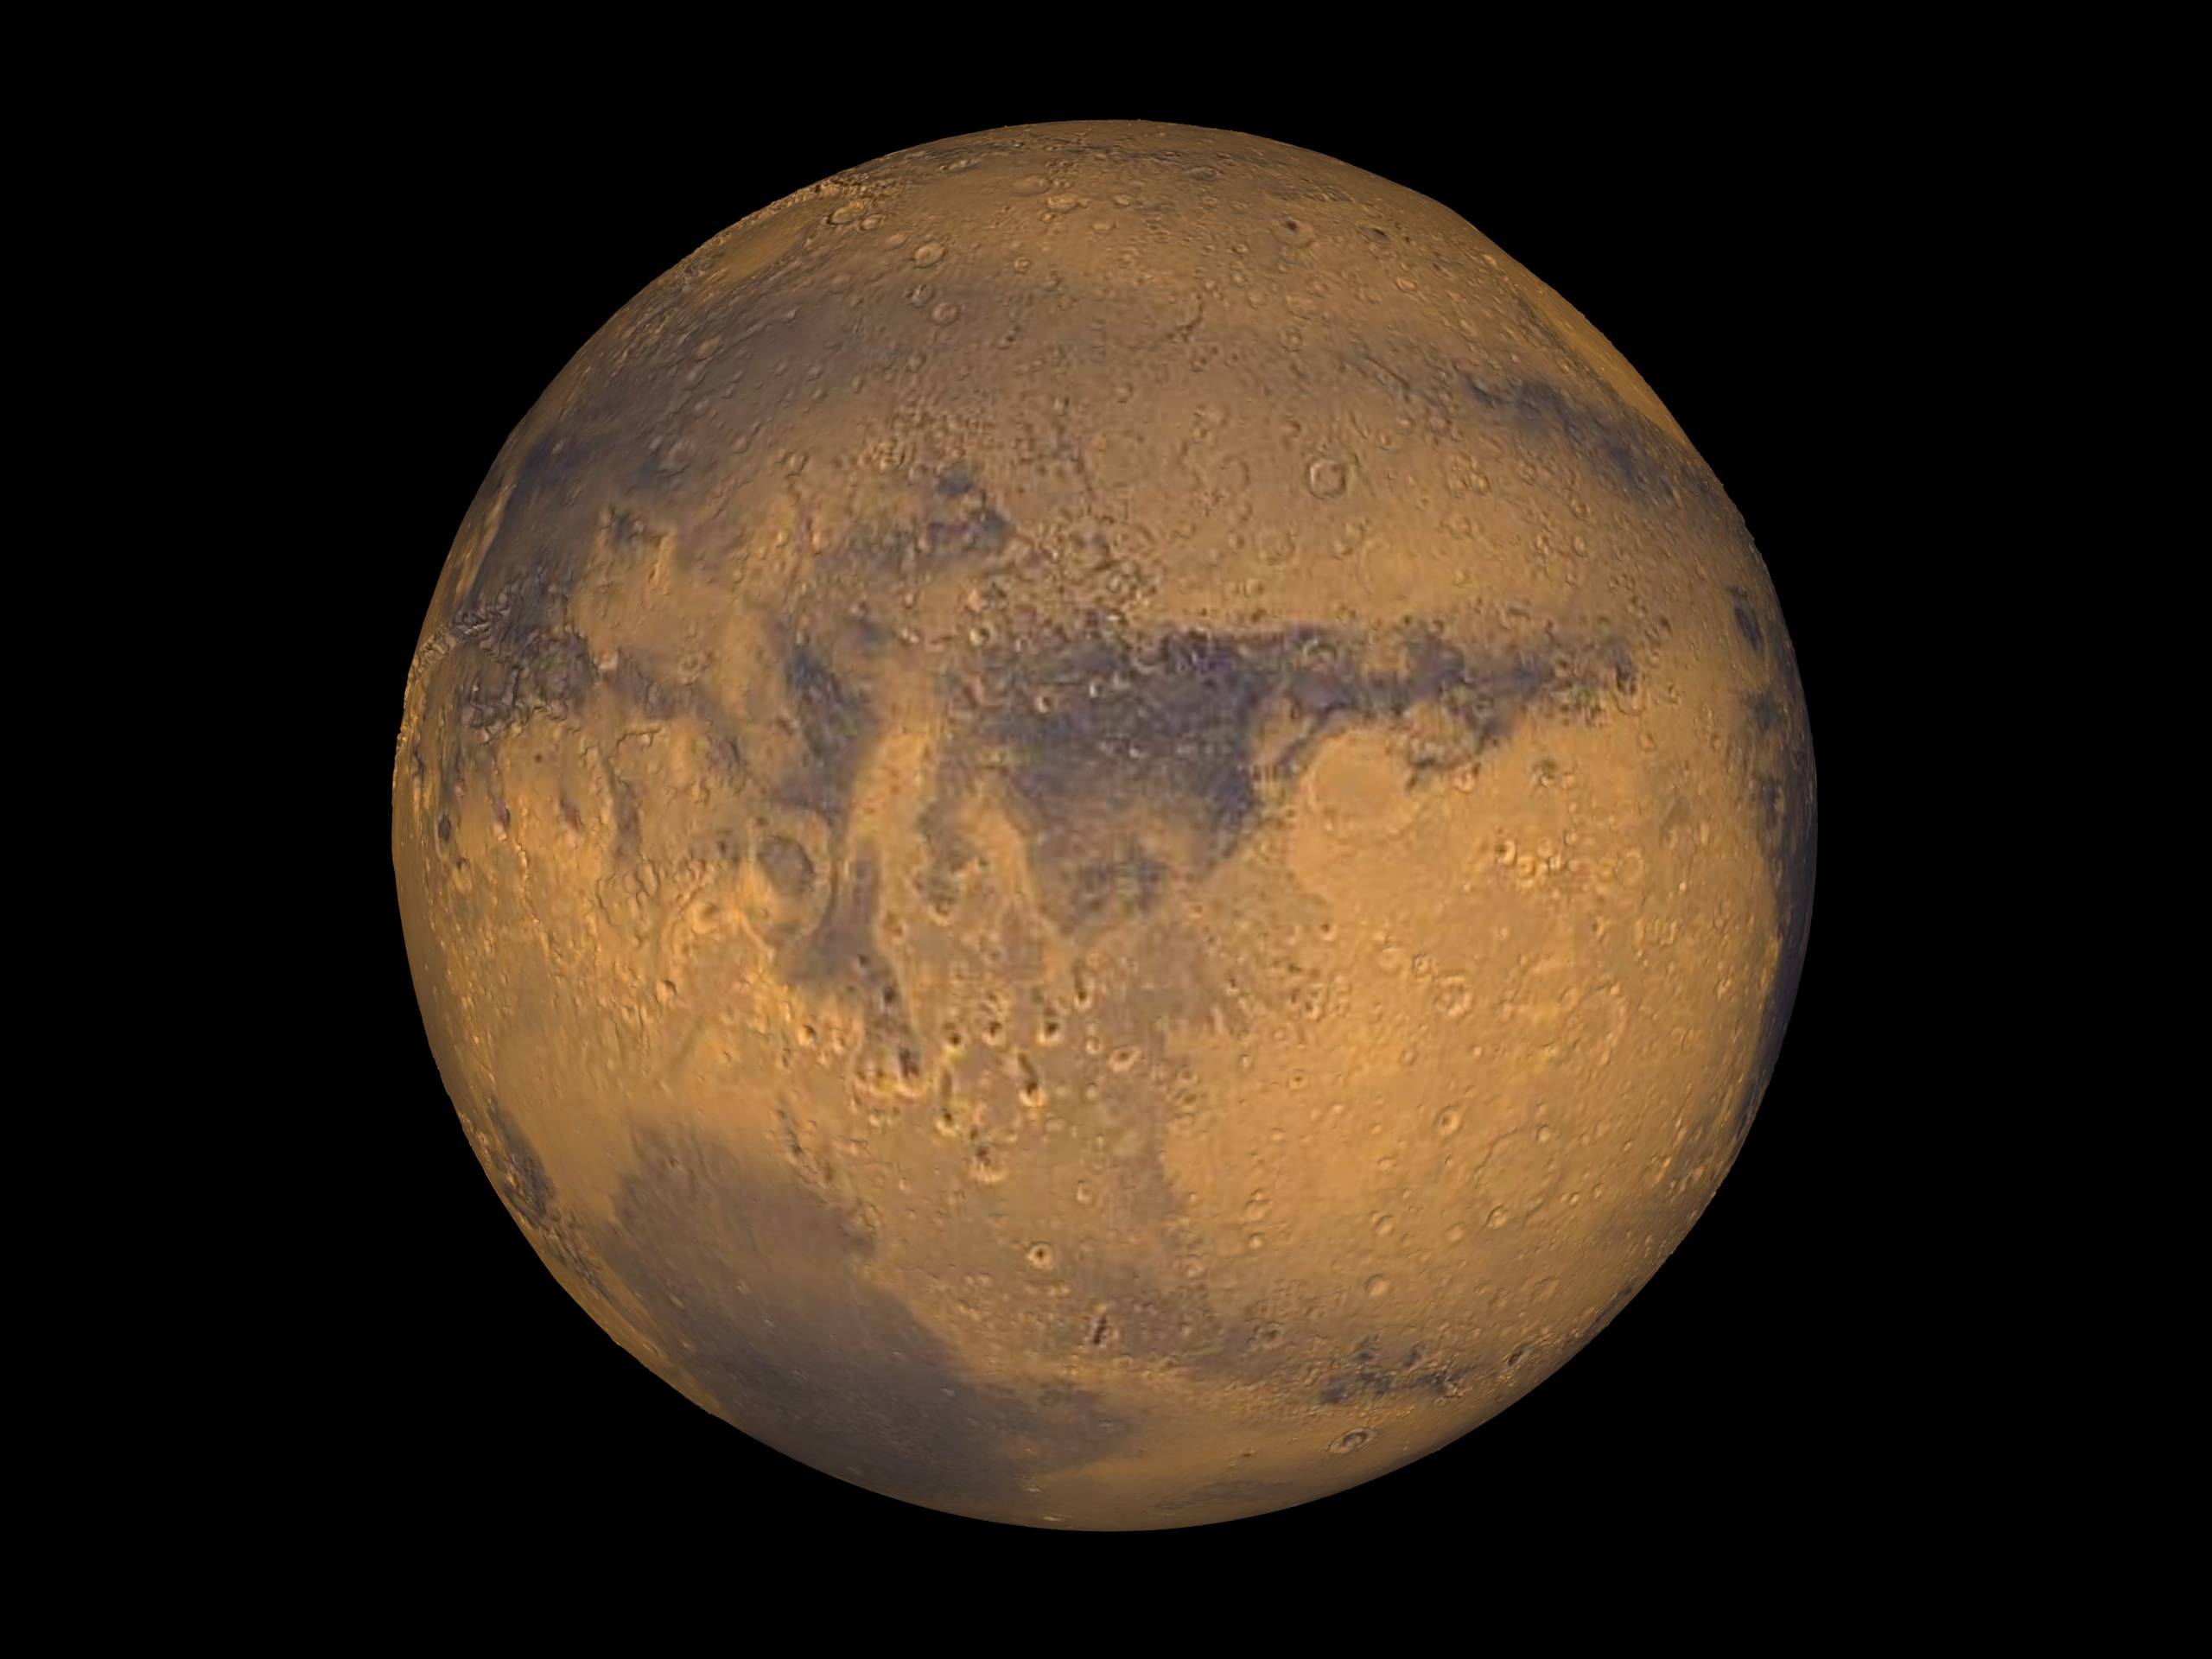 Πιο κοντά από ποτέ αύριο ο Άρης στη Γη